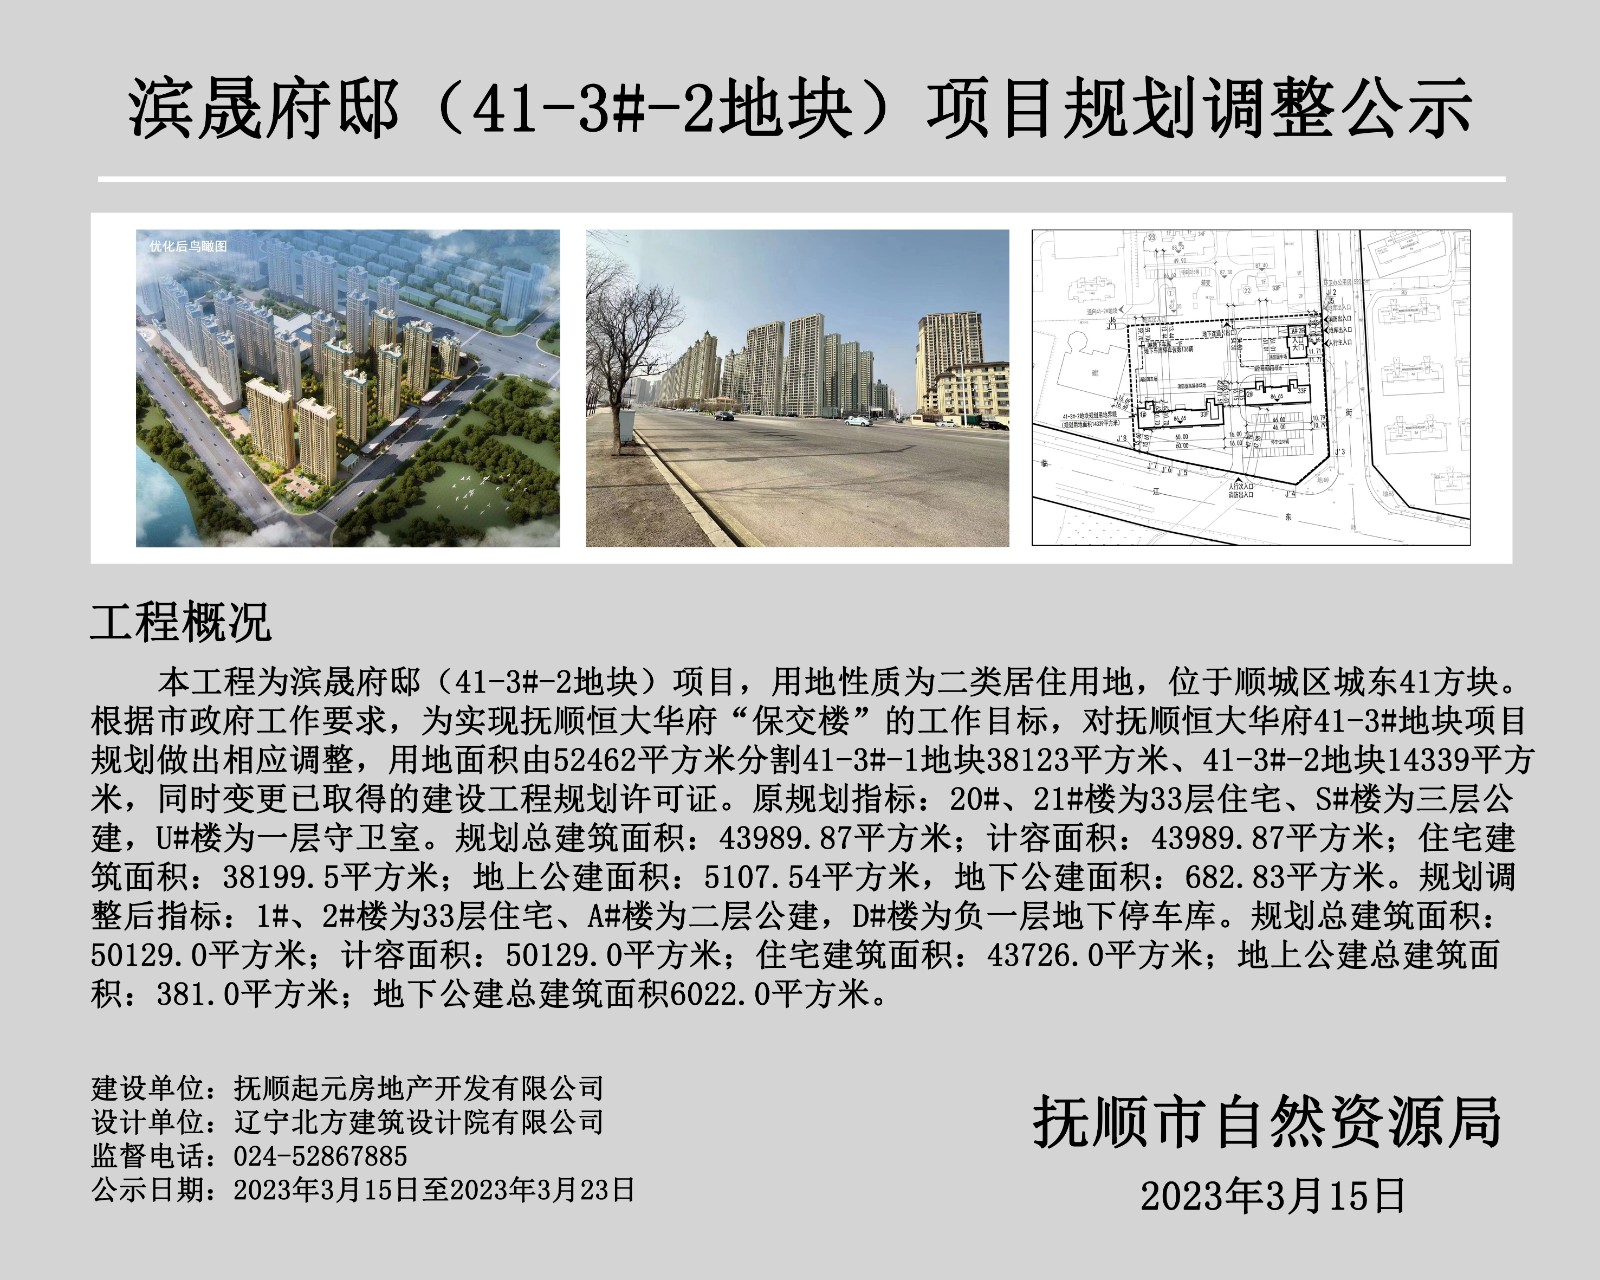 滨晟府邸（41-3#-2地块）项目规划调整公式.jpg